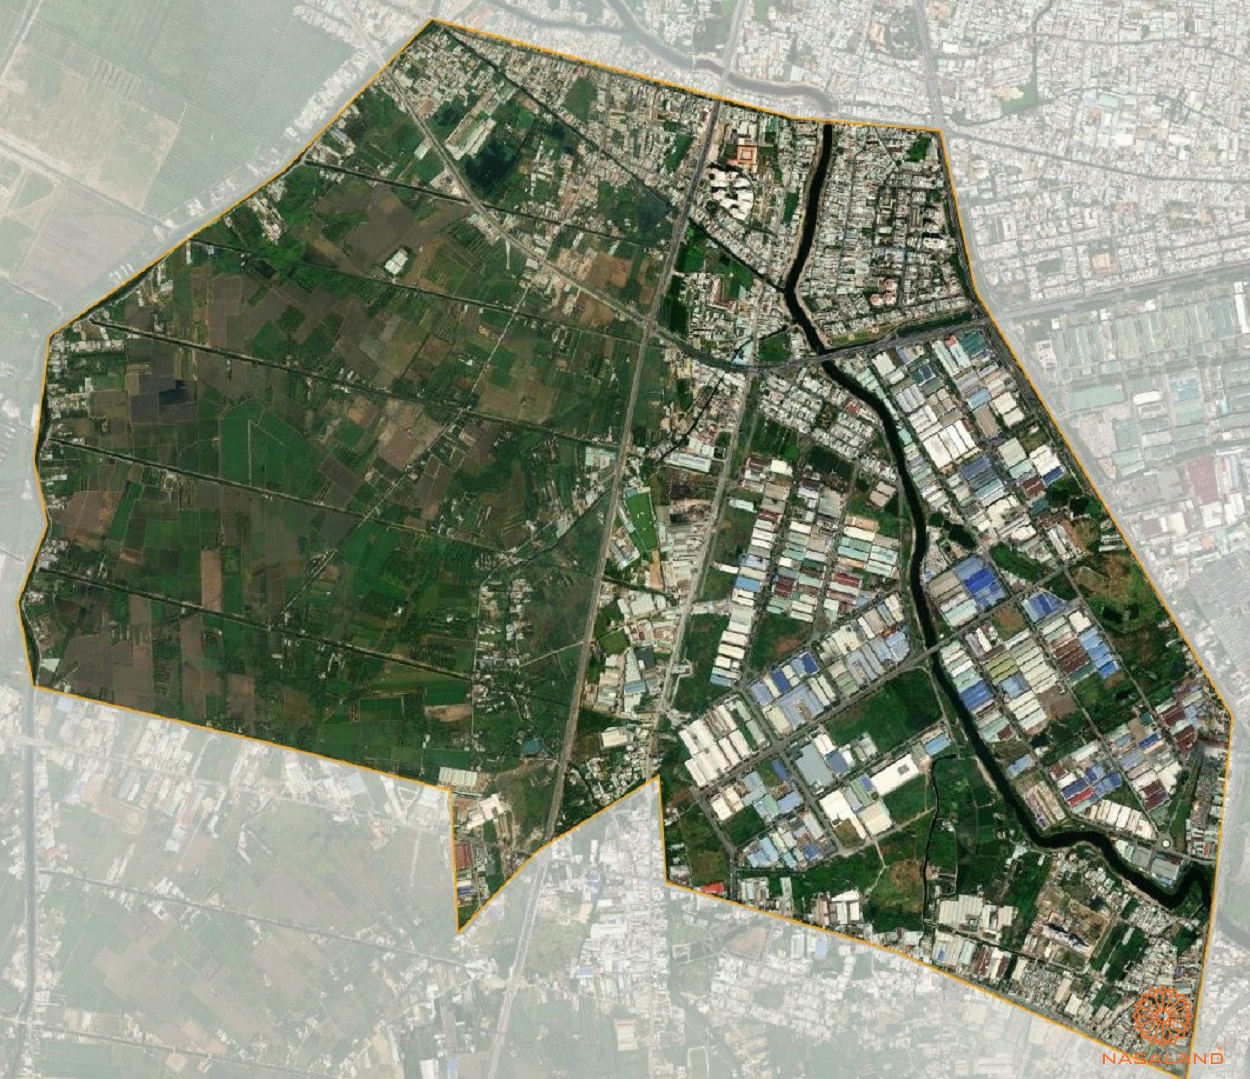 Quy hoạch sử dụng đất Phường Tân Tạo A Quận Bình Tân thể hiện trên bản đồ quy hoạch phân khu tỷ lệ 1/2000 của TP. HCM